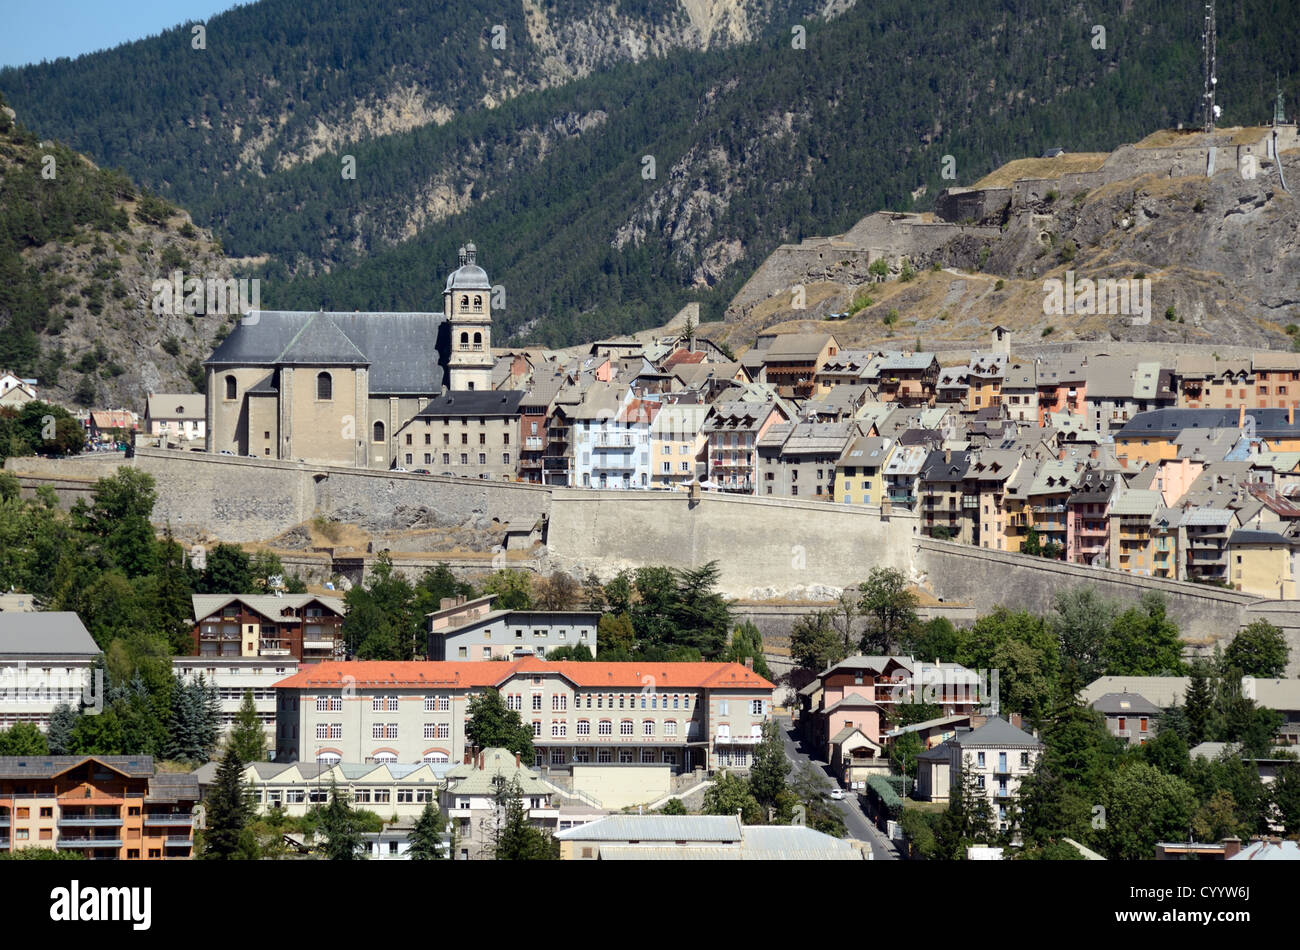 Panoramablick auf die Kirche und die Stadthäuser in der Altstadt oder dem historischen Viertel der befestigten Stadt Briançon, die von Vauban Hautes-Alpes Frankreich erbaut wurde Stockfoto